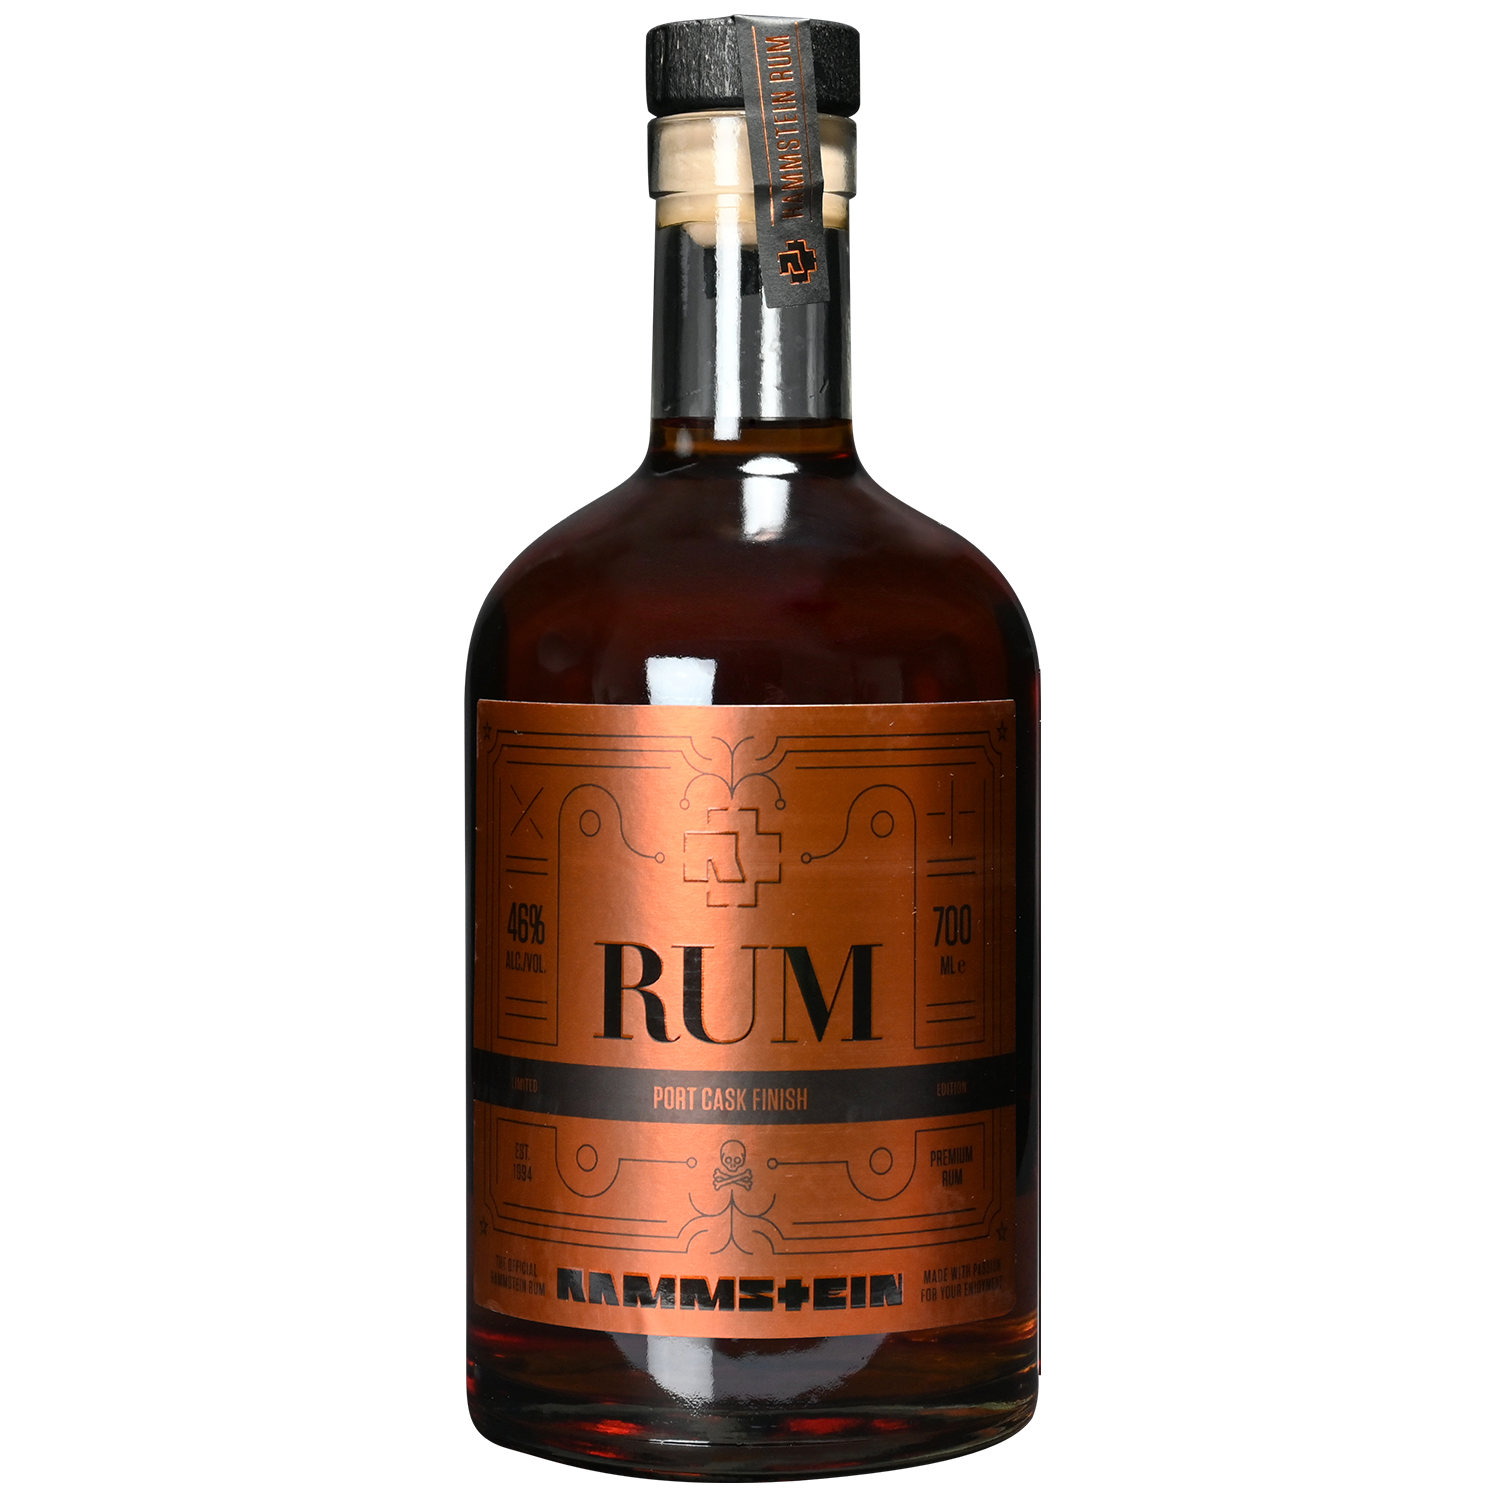 Rum Rammstein Limited Edition #6 Port 700 ml